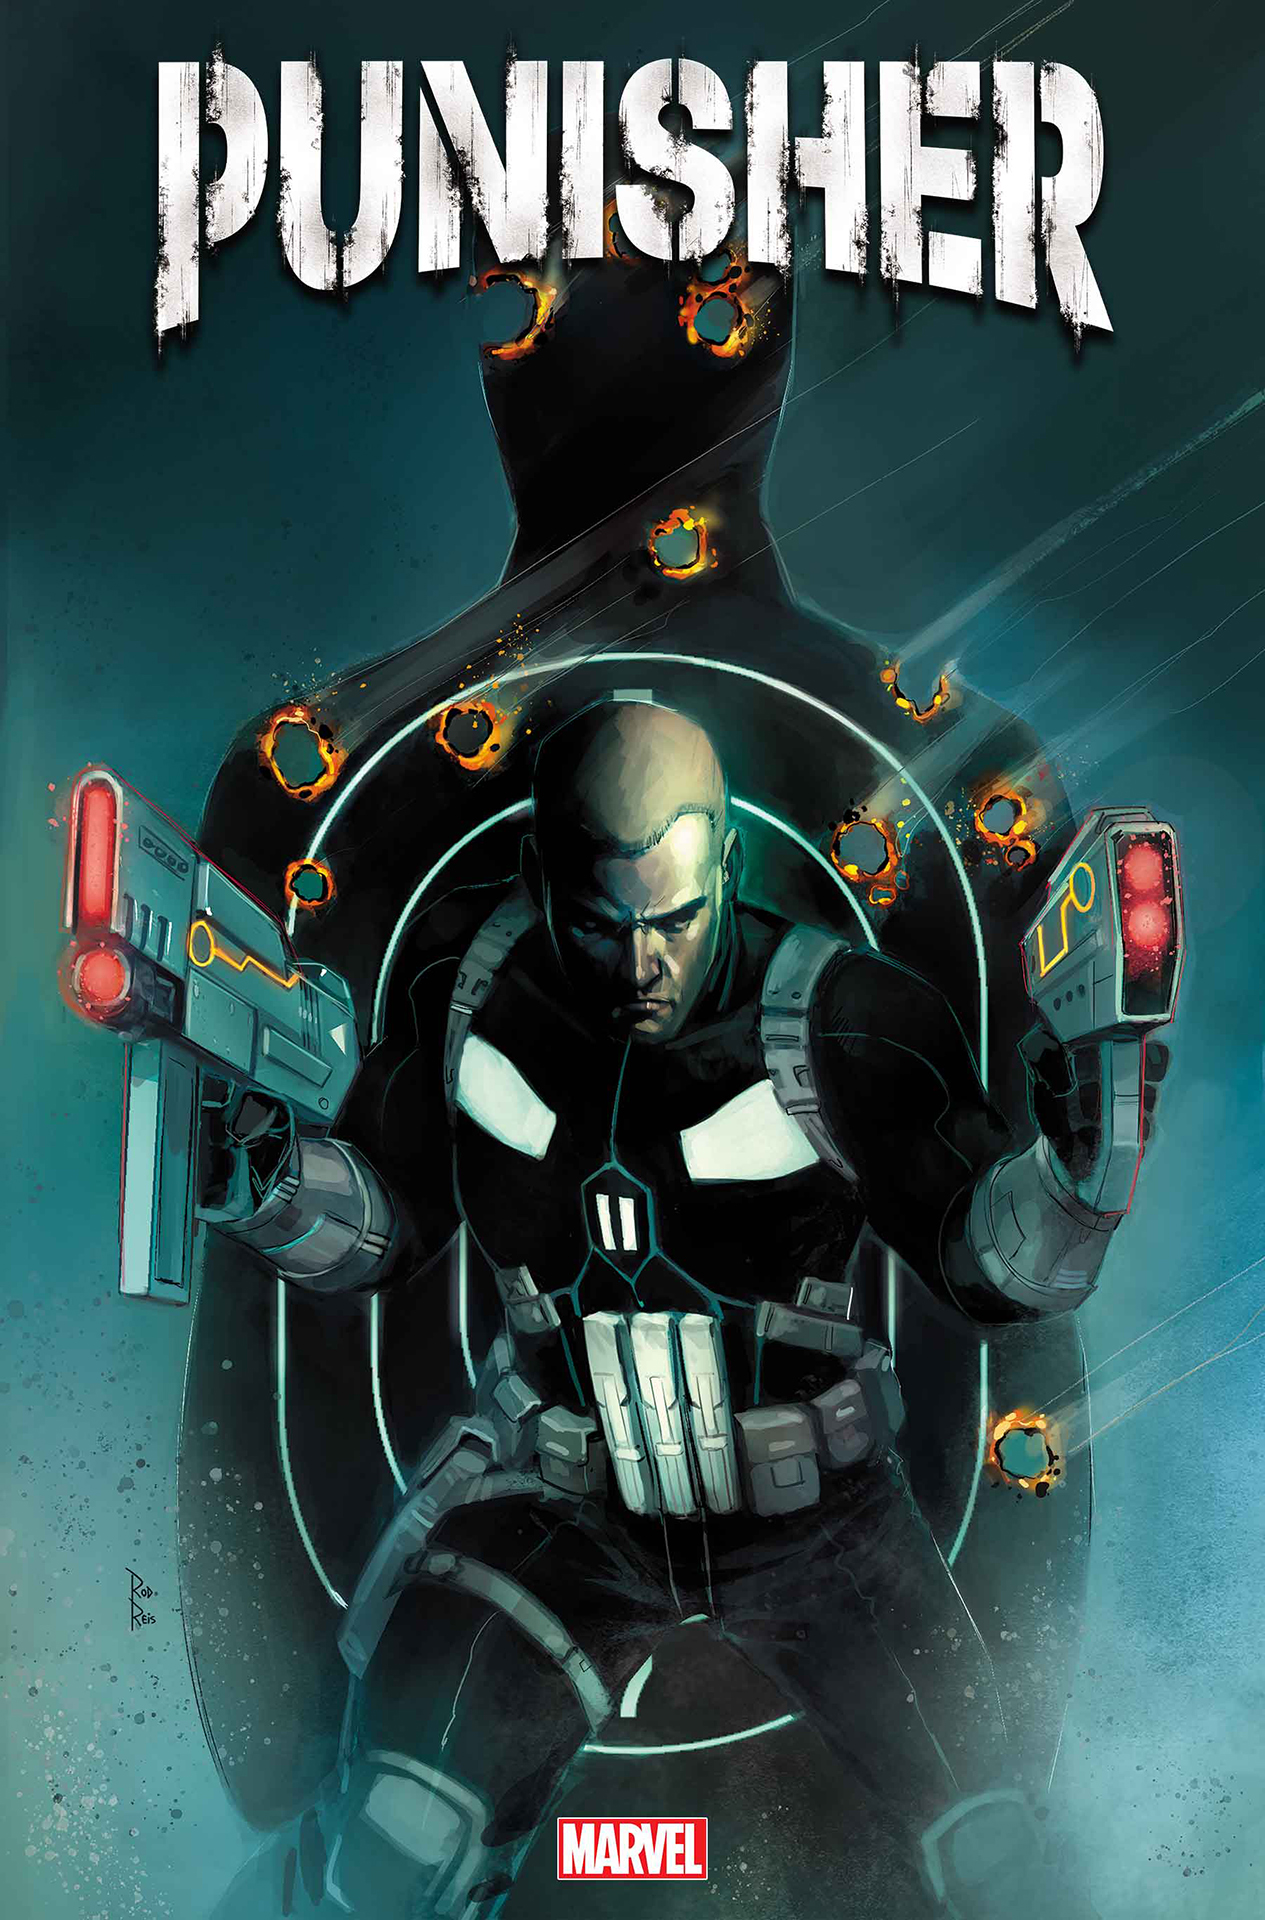 Arte de portada de Punisher #1 por Rod Reis